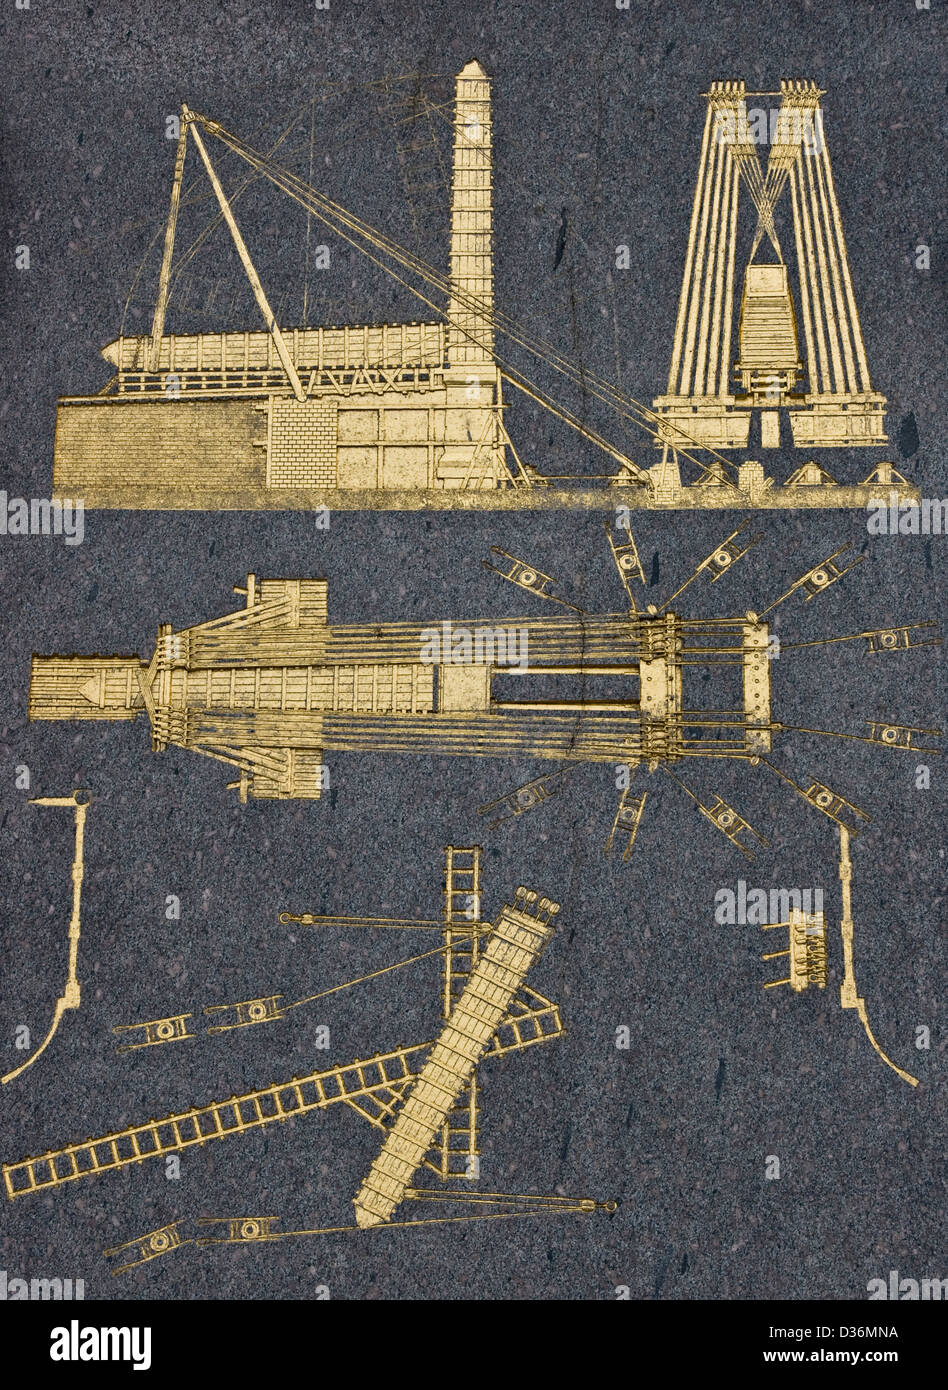 Des diagrammes sur piédestal de l'Obélisque de Louxor Place de la Concorde Paris France Europe Banque D'Images